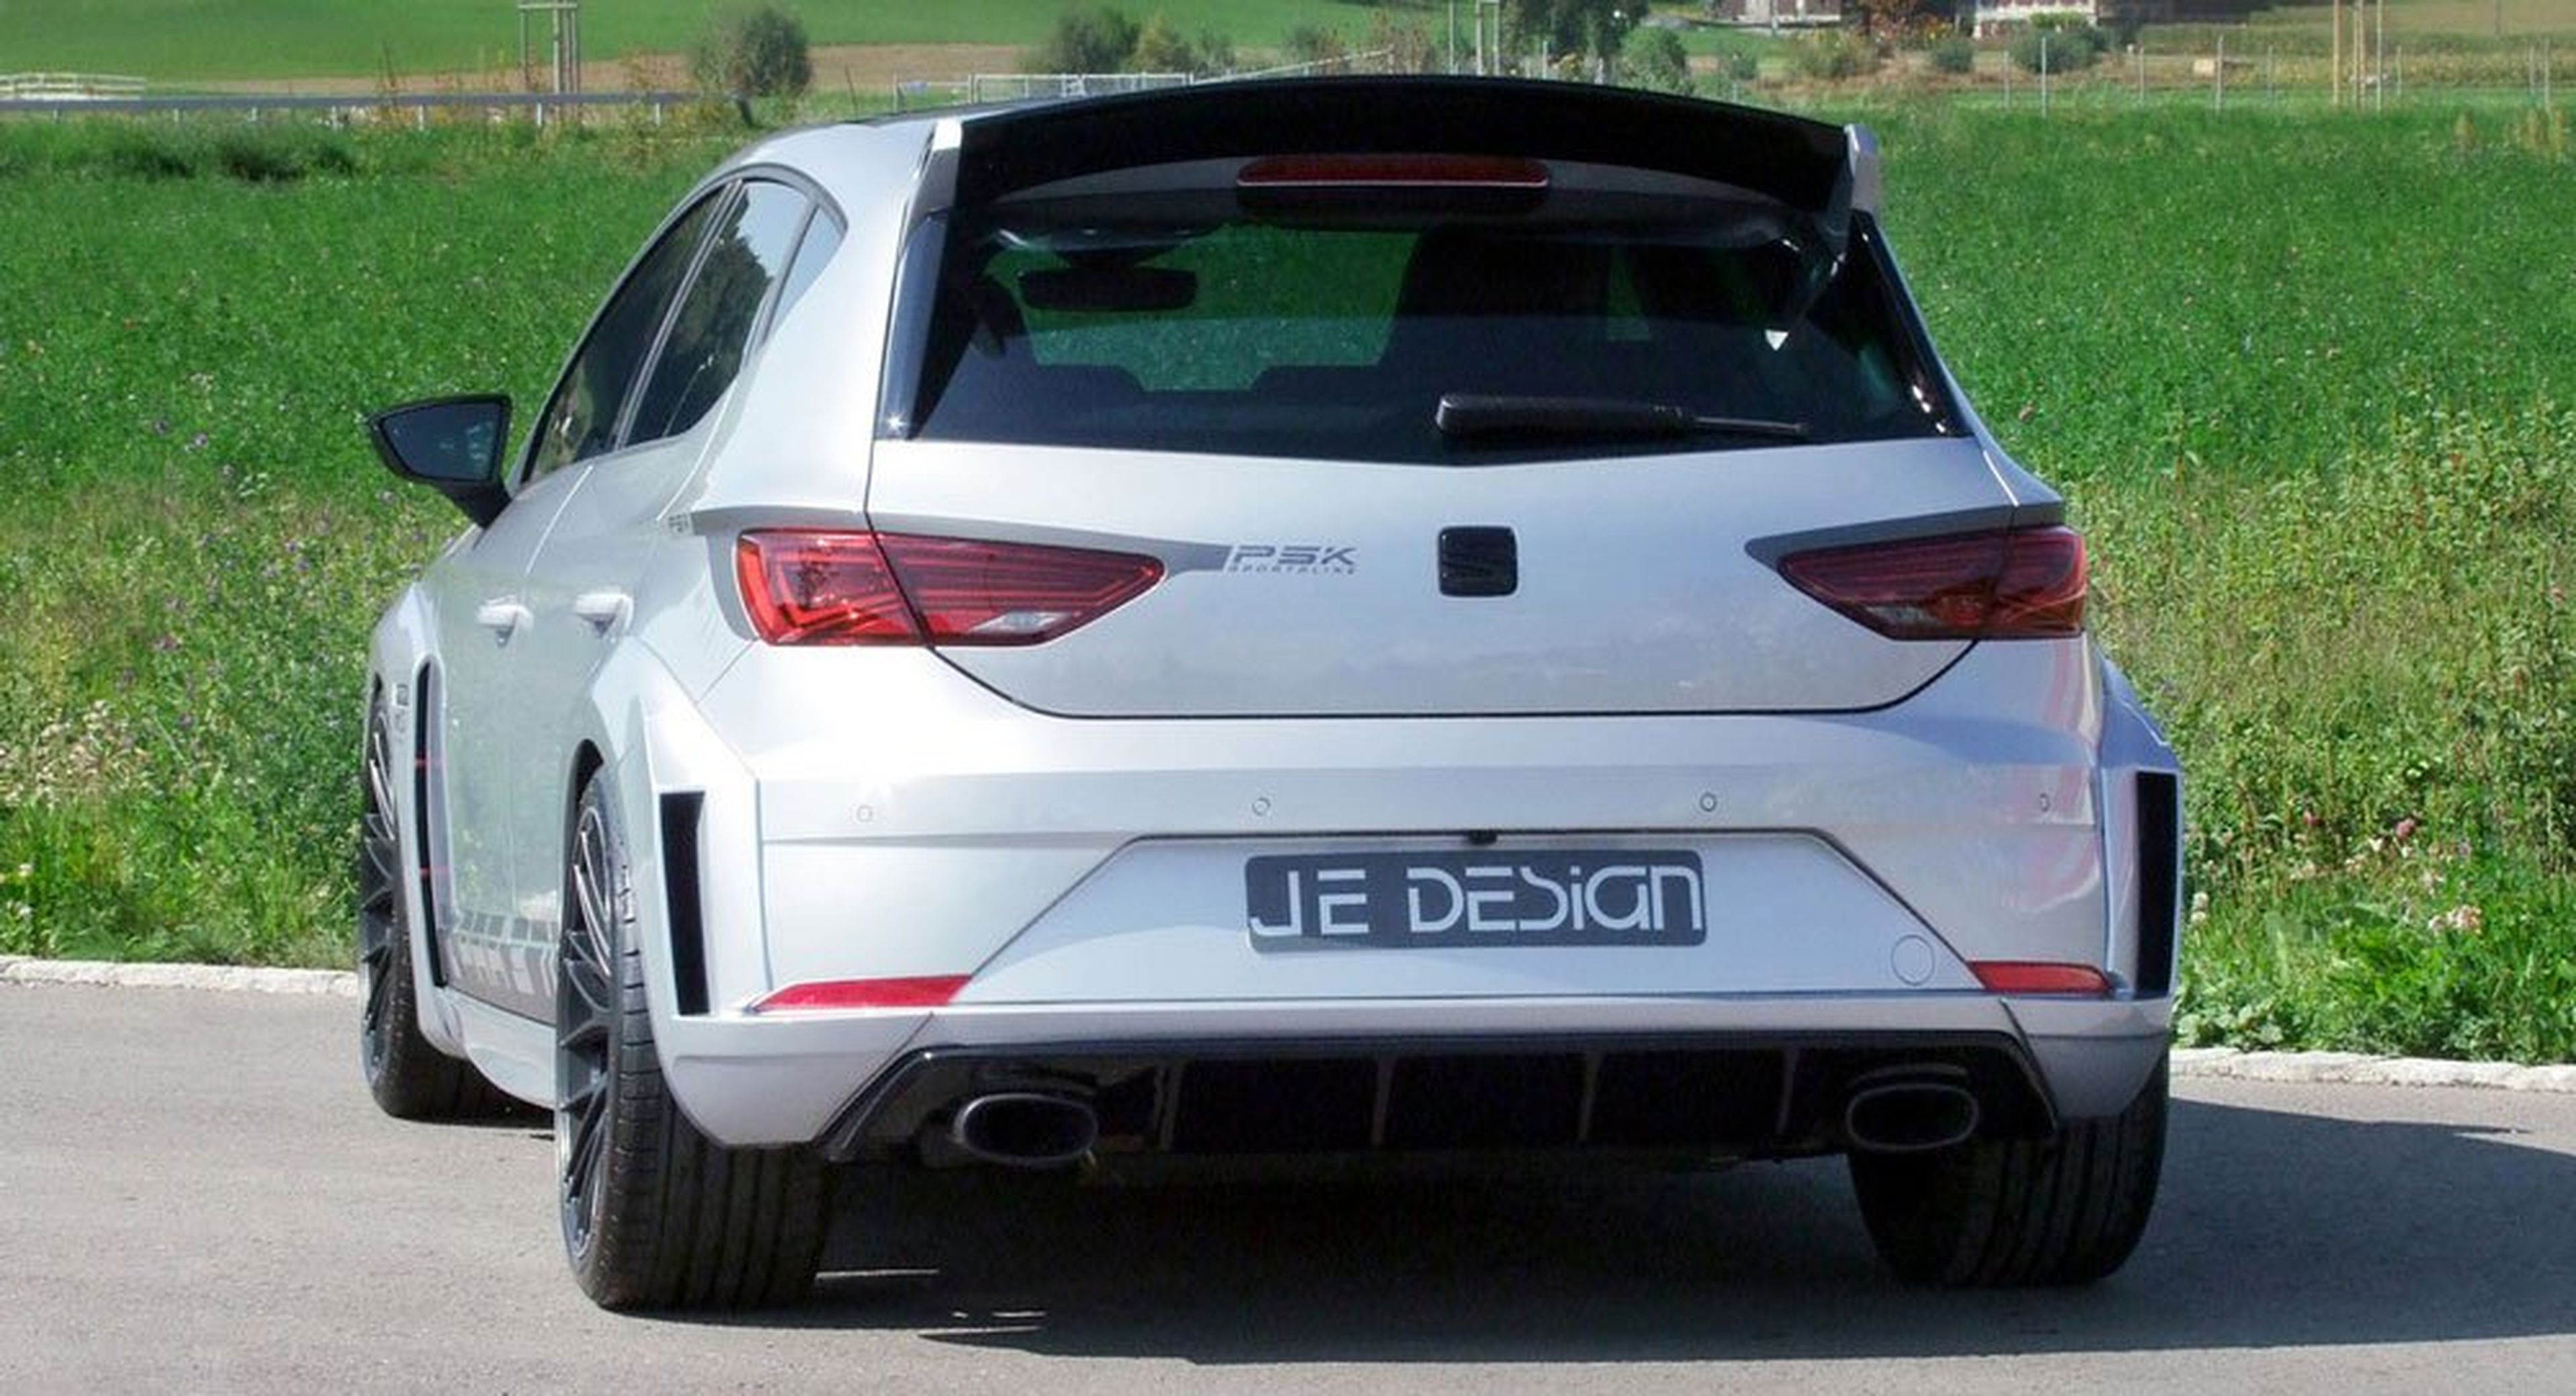 JE Design Seat León Cupra 300